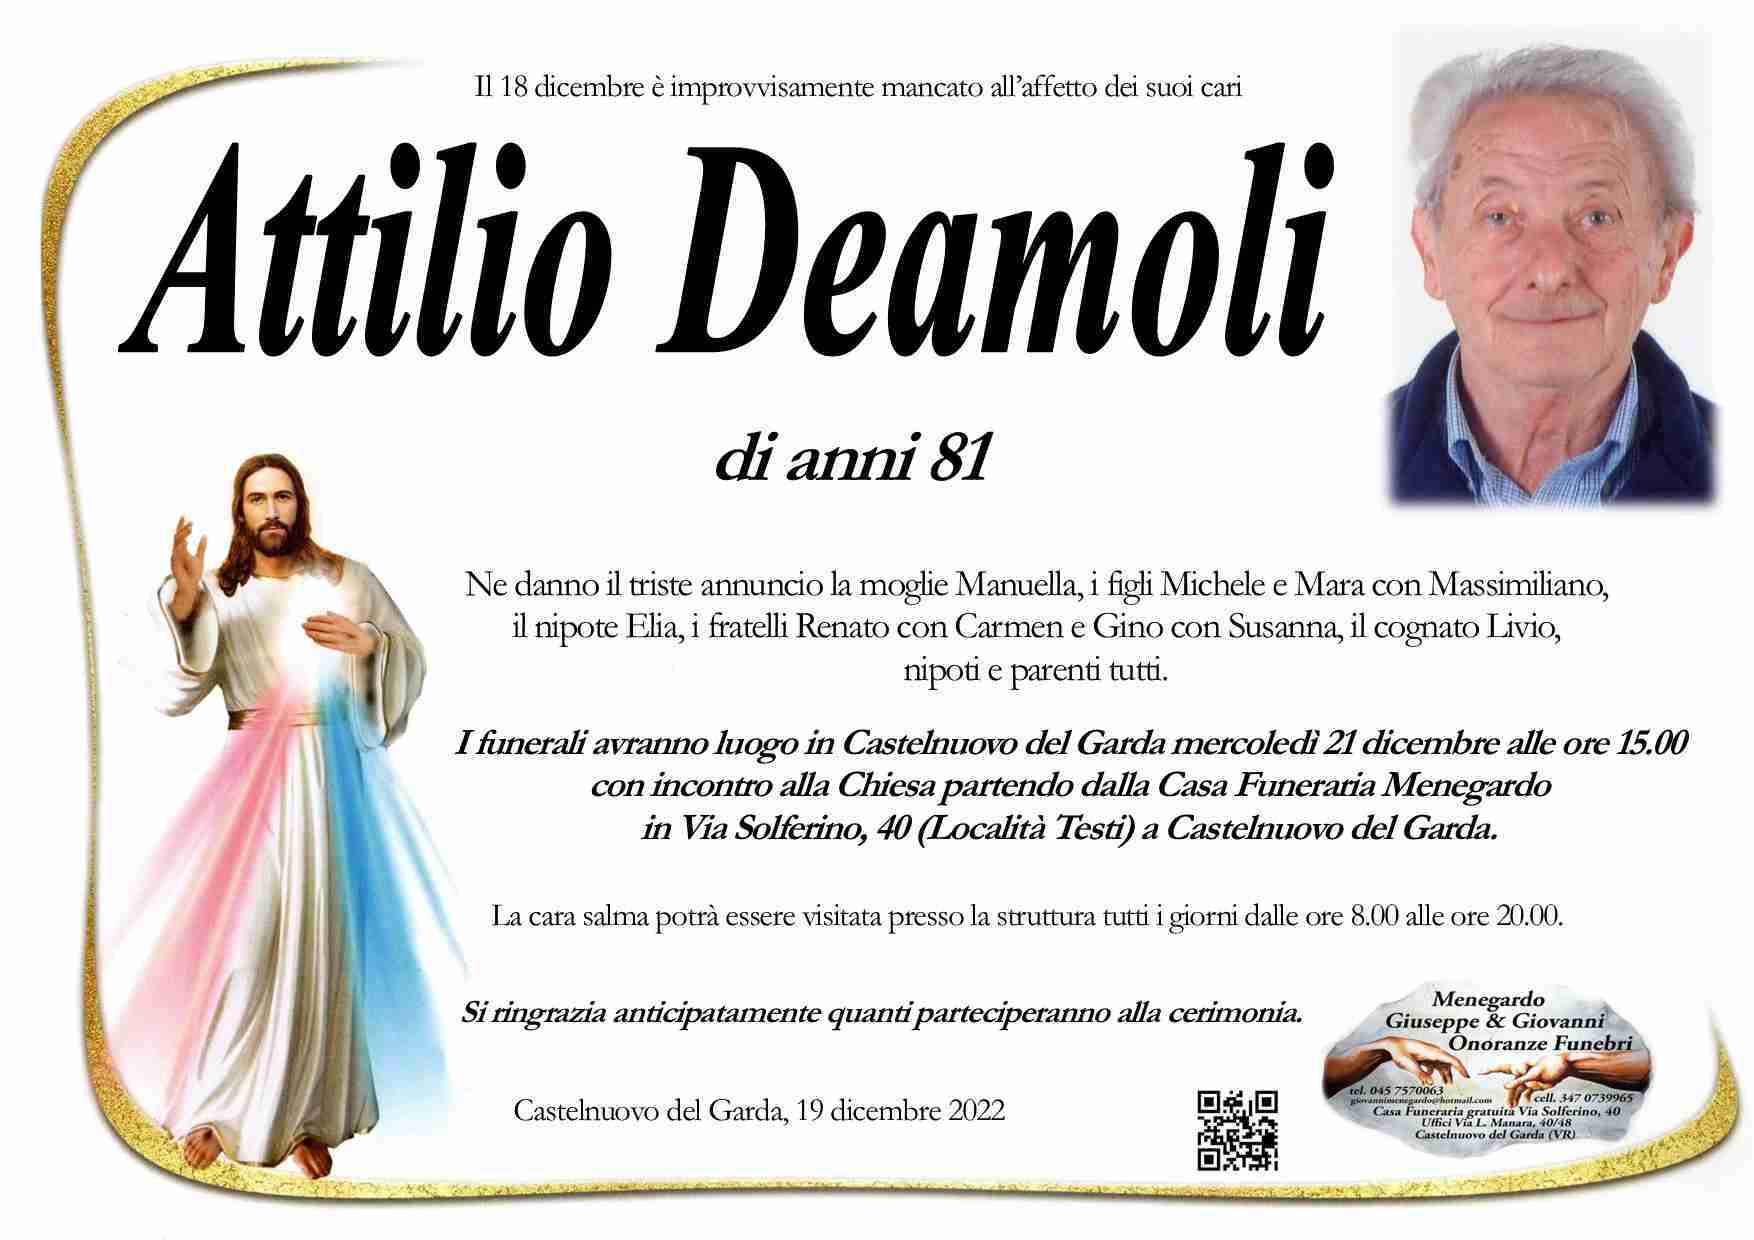 Attilio Deamoli